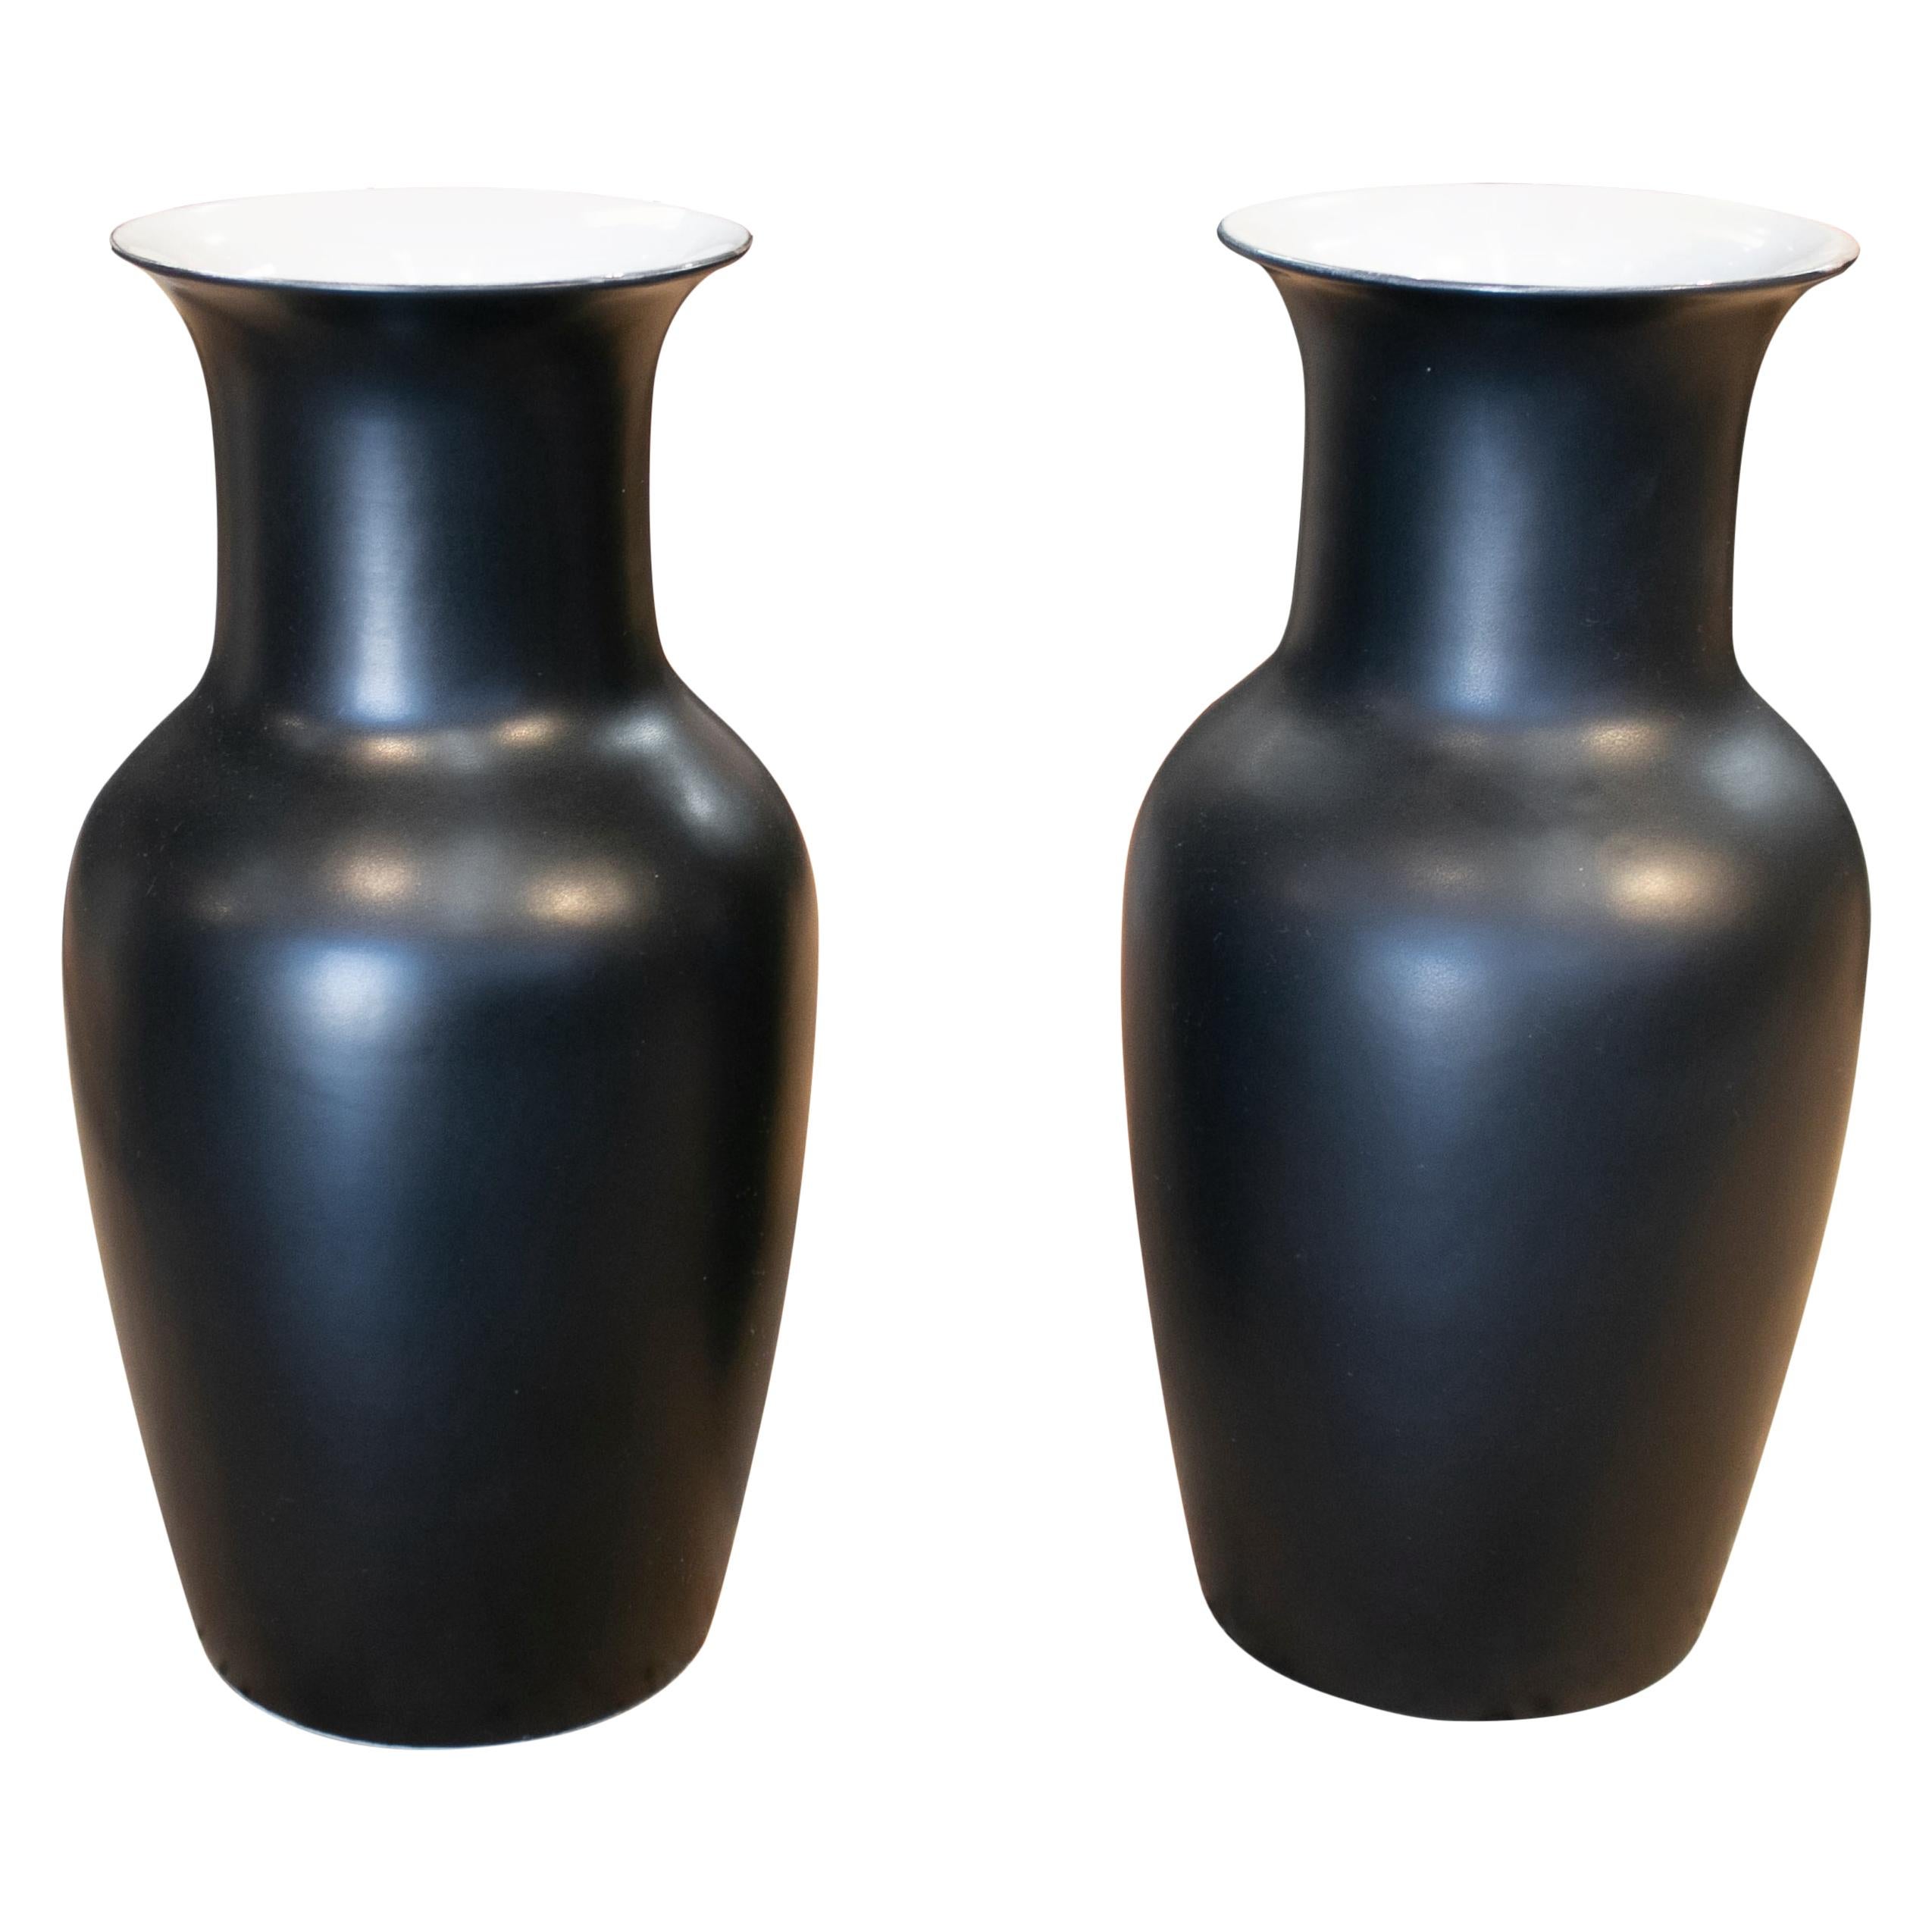 1990s Pair of Spanish Black Matte Finish Ceramic Vases